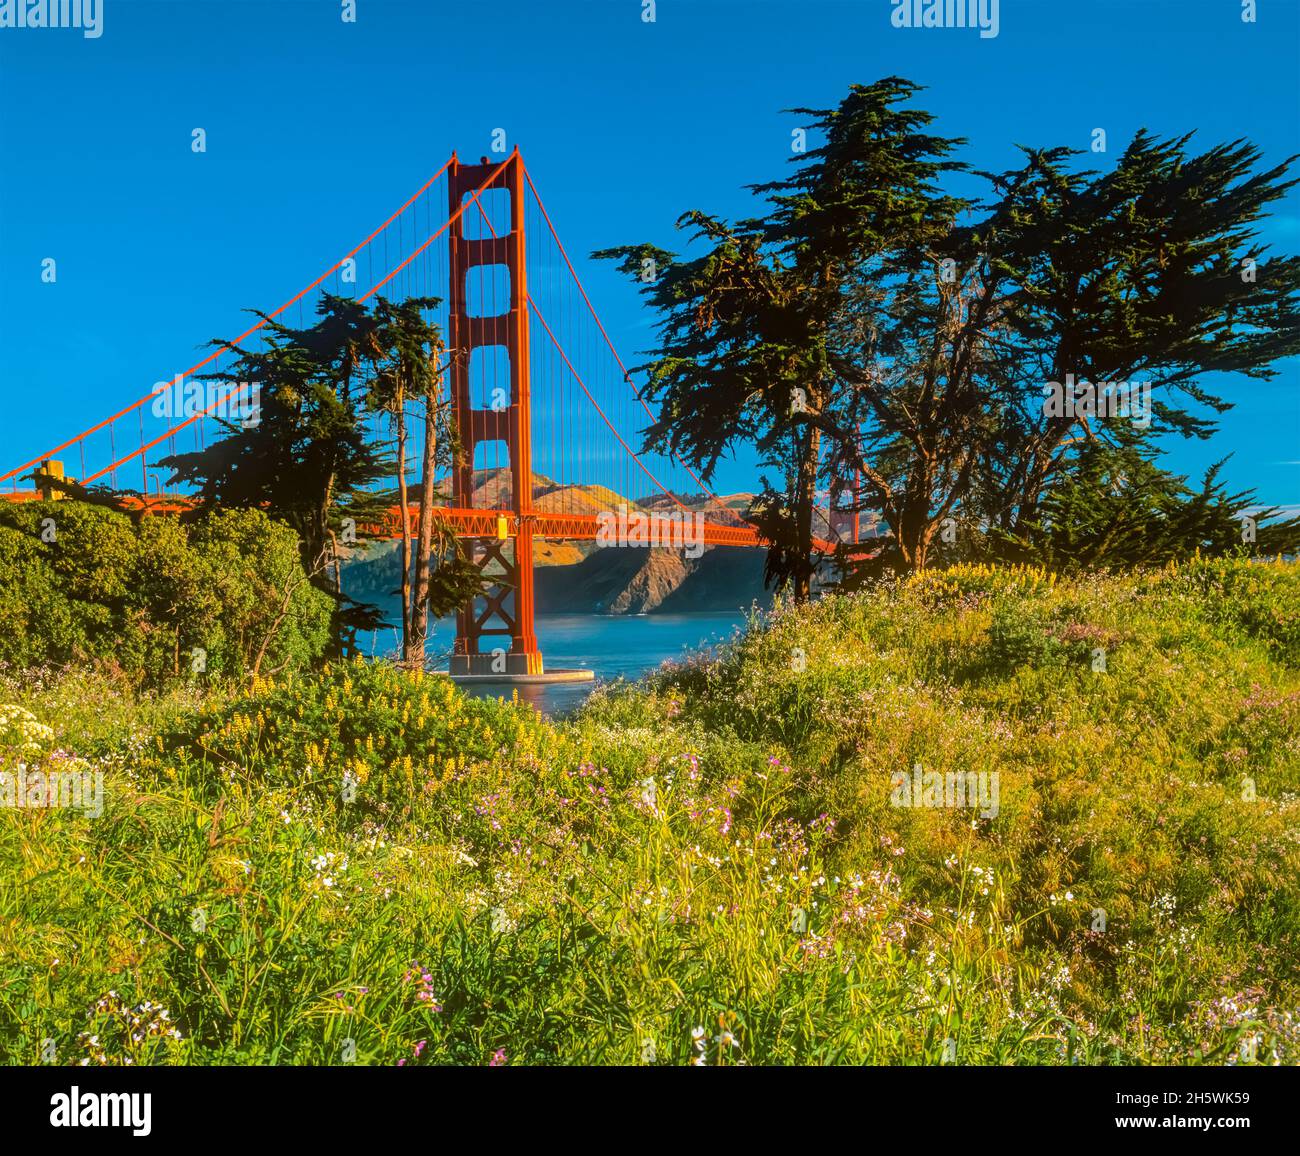 El puente Golden Gate se encuentra entre los ciprés y las abundantes flores de San Francisco, California, por encima de la bahía de San Francisco. Foto de stock